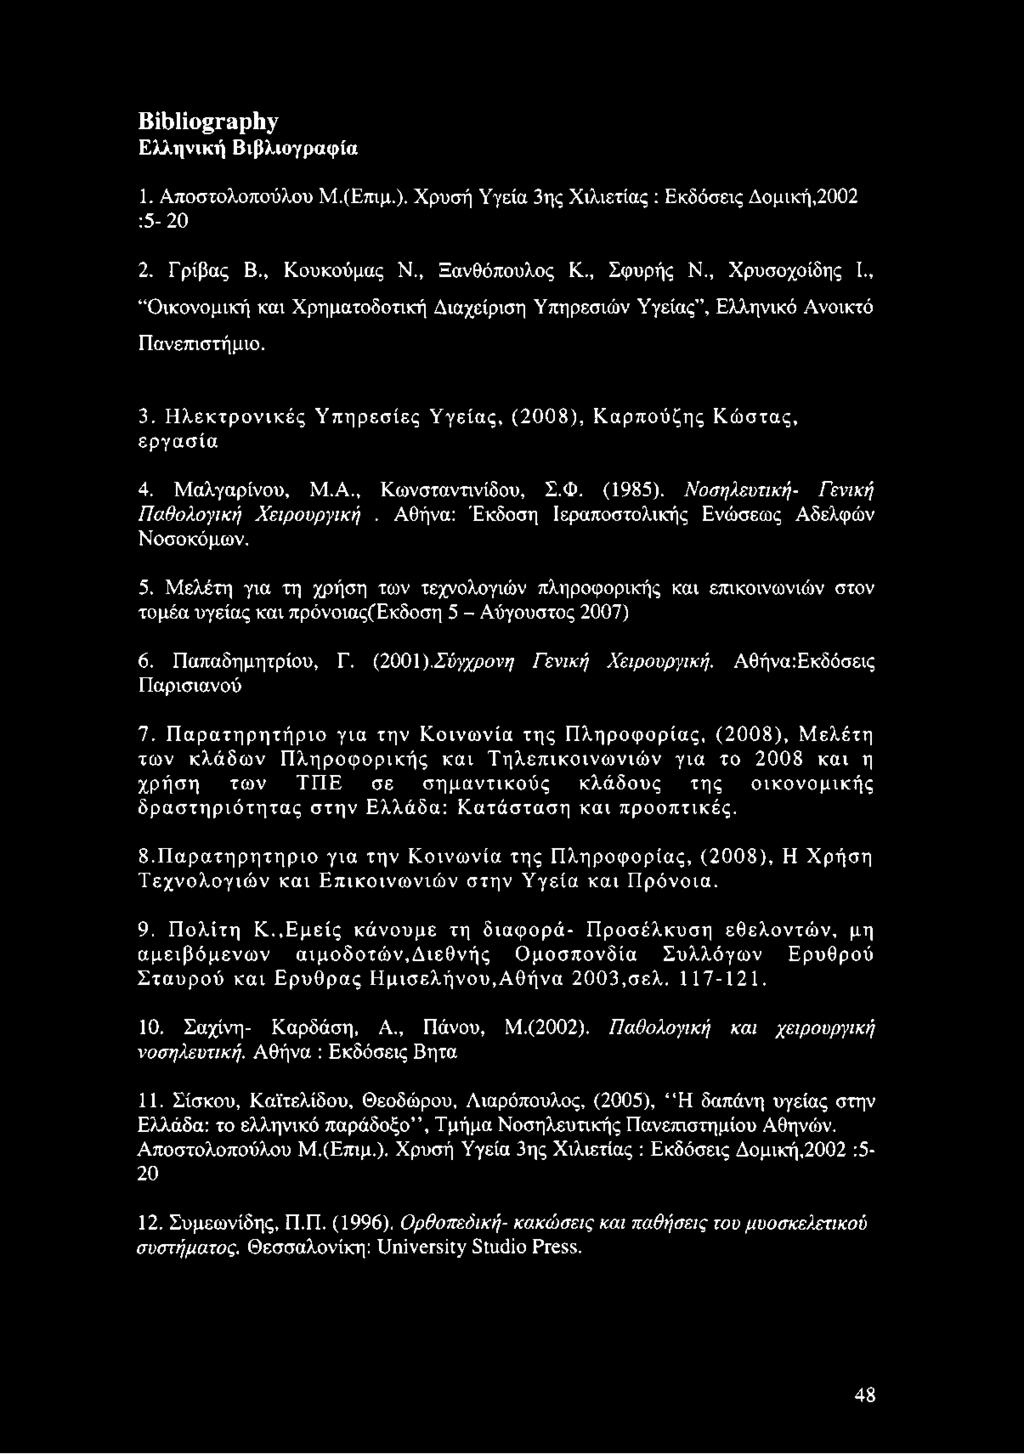 (1985). Νοσηλευτική- Γενική Παθολογική Χειρουργική. Αθήνα: Έκδοση Ιεραποστολικής Ενώσεως Αδελφών Νοσοκόμων. 5.